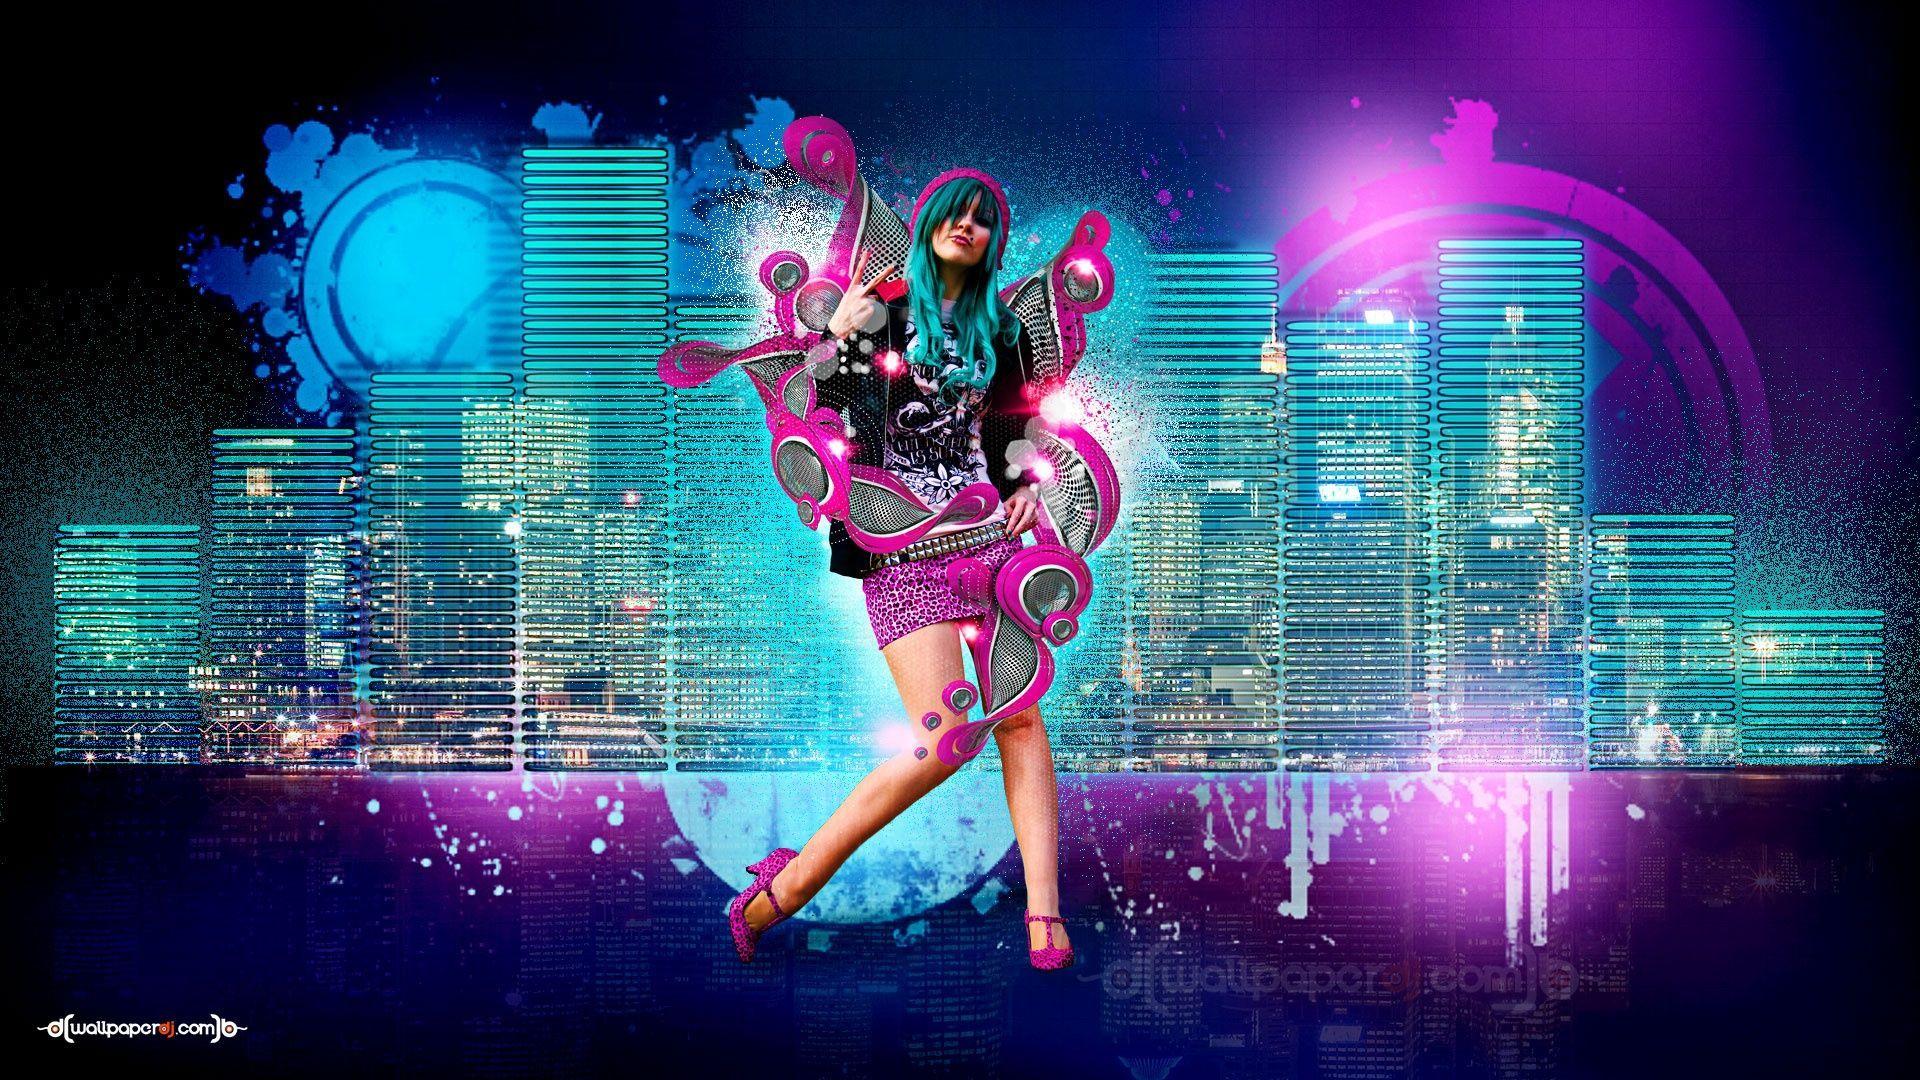 Современная танцевальная музыка mp3. Обложки электронной музыки. Клубные обои. Девушка с магнитофоном. Техно танец.